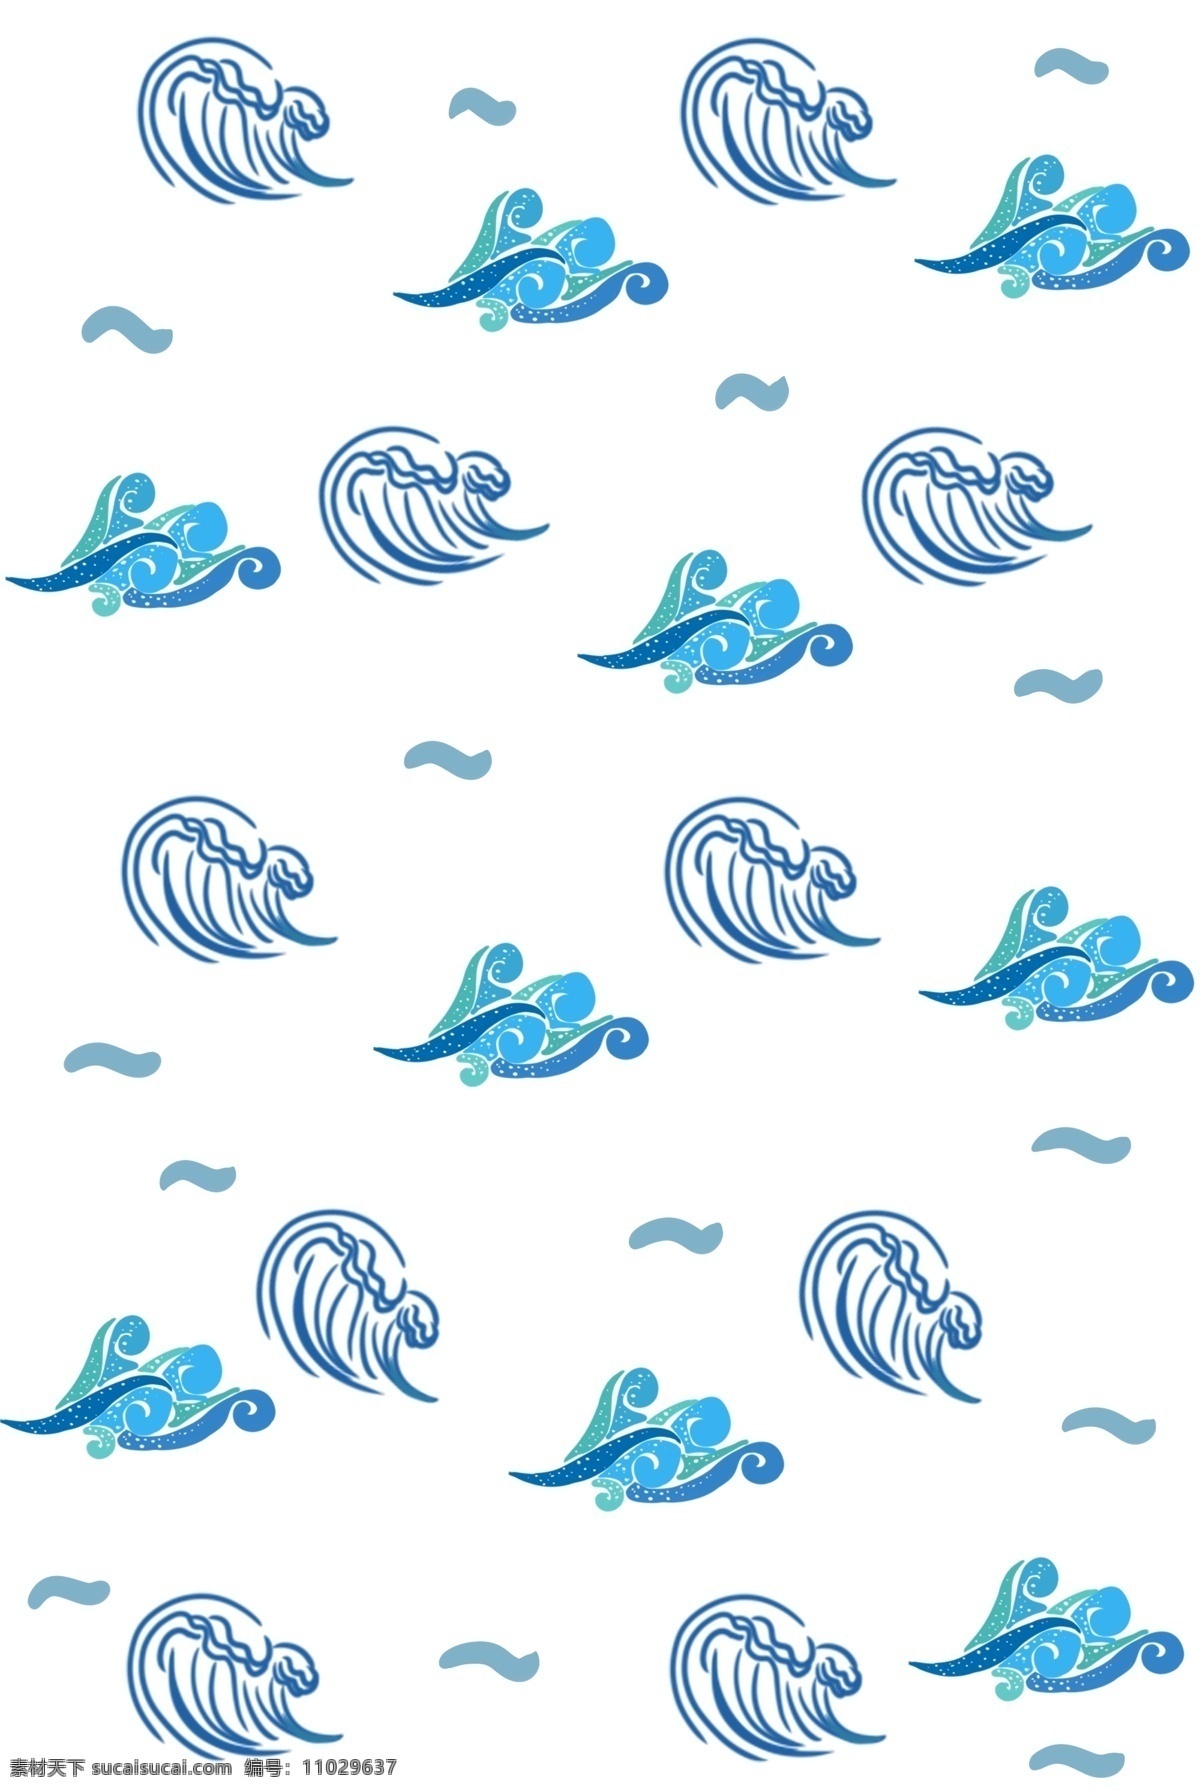 蓝色 线条 海浪 底纹 海浪底纹 线条海浪 线条底纹 海浪设计 卡通底纹 蓝色海浪 大海 底纹设计